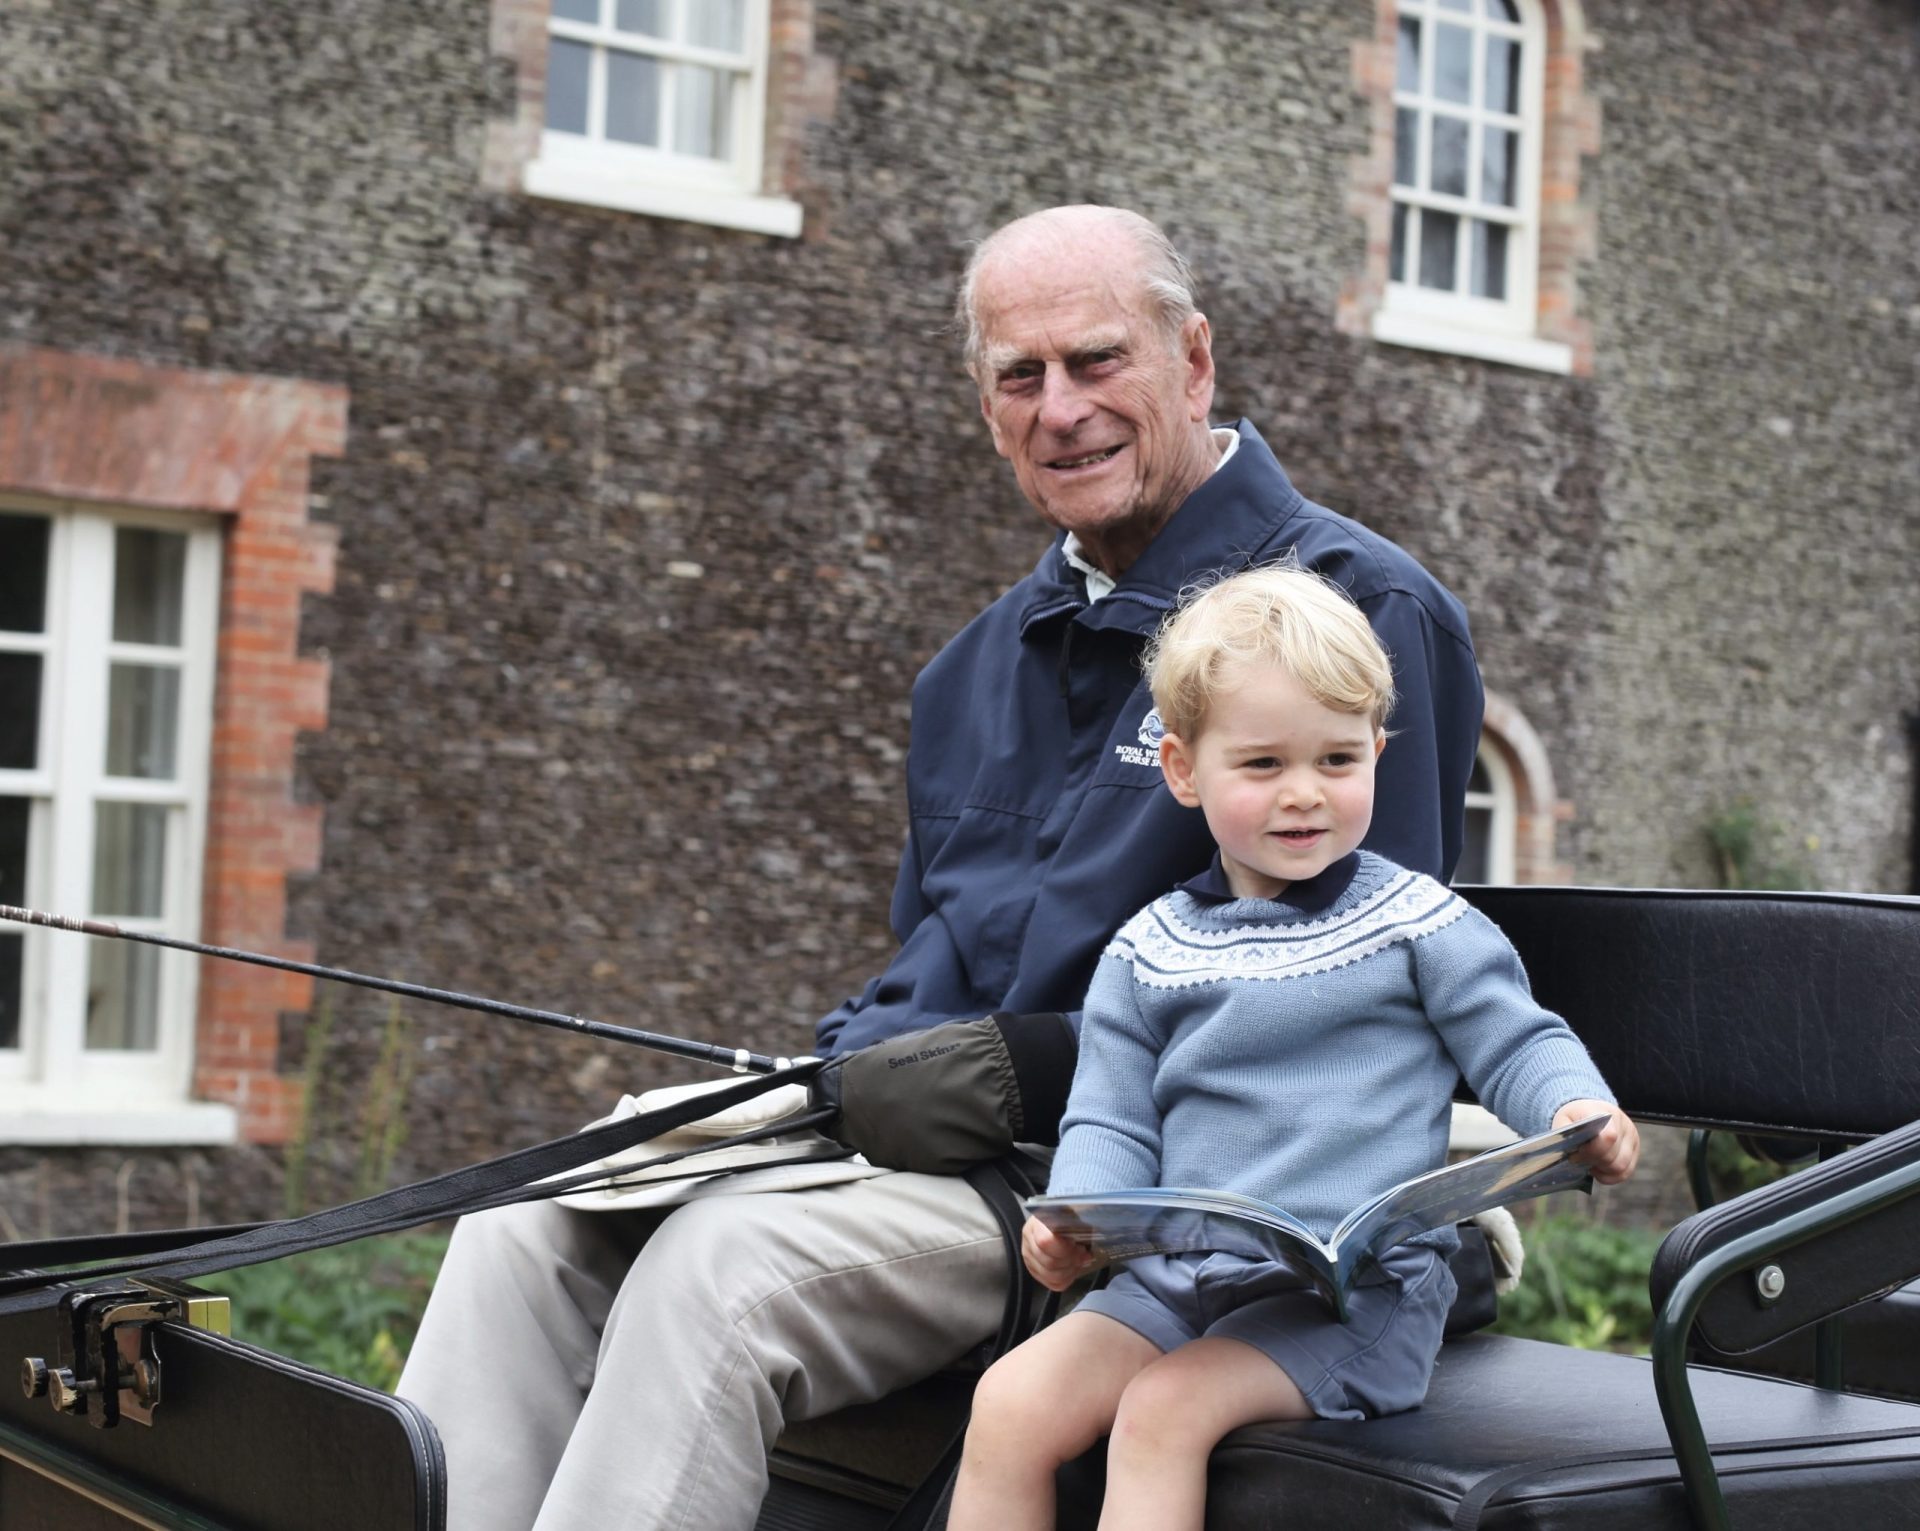 “O meu avô era um homem extraordinário”, diz Princípe William